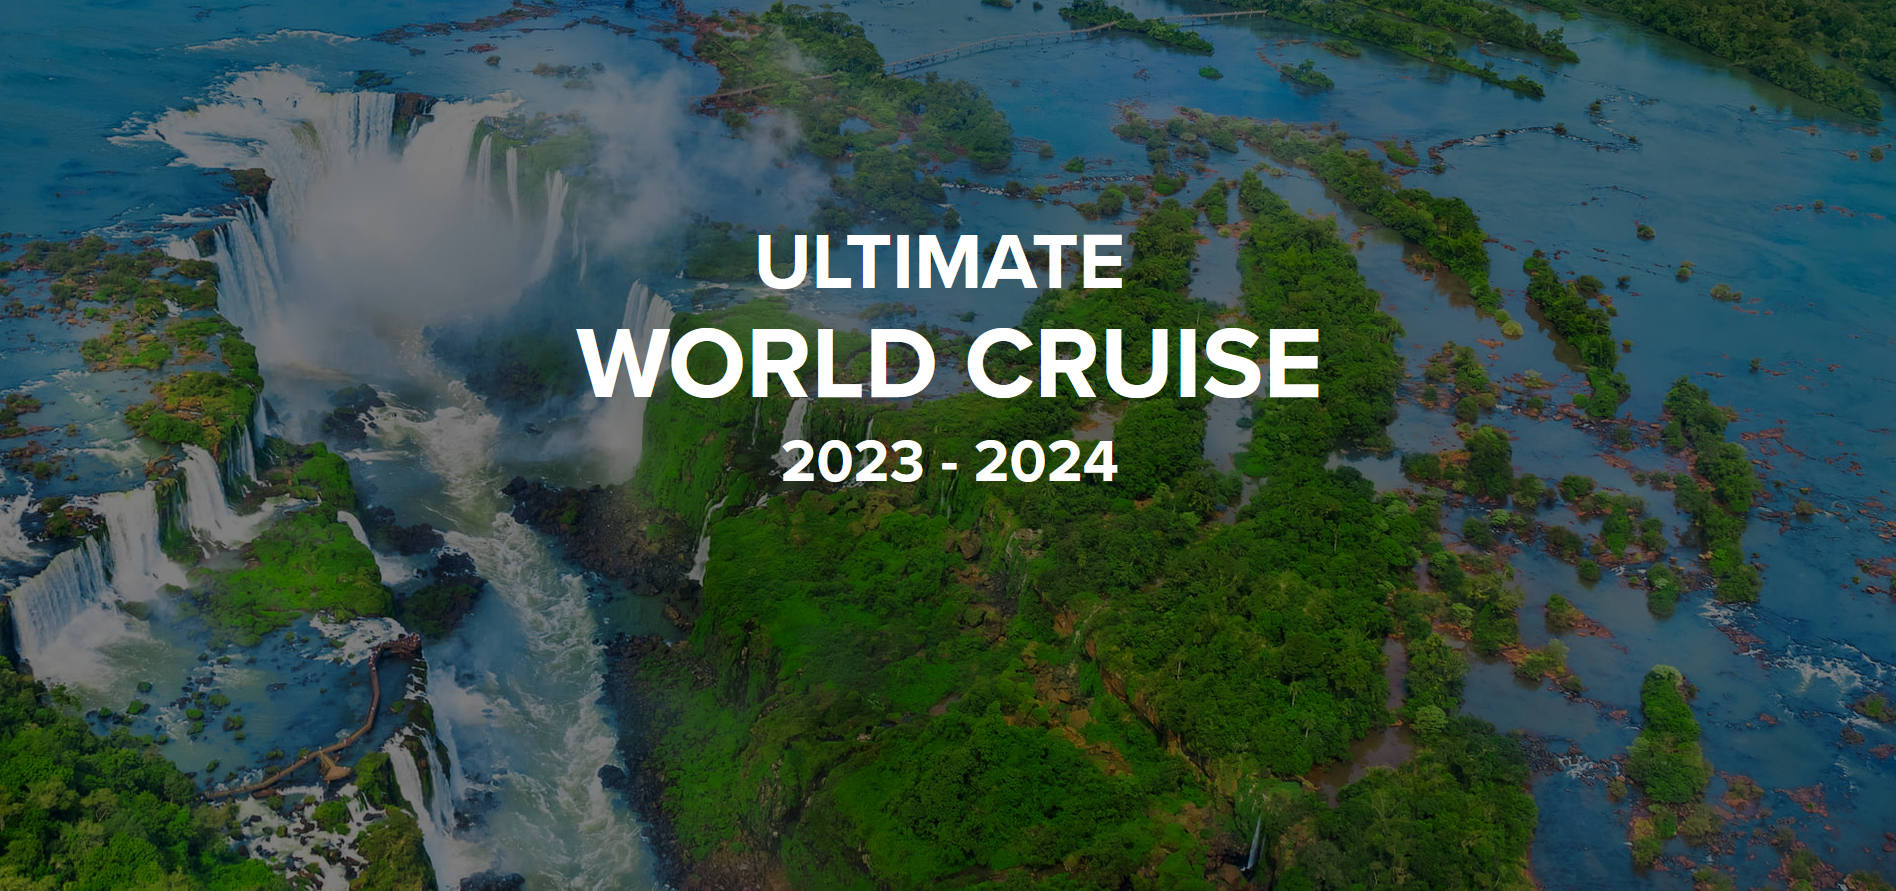 Ultimate World Cruise 23-24 von RCI